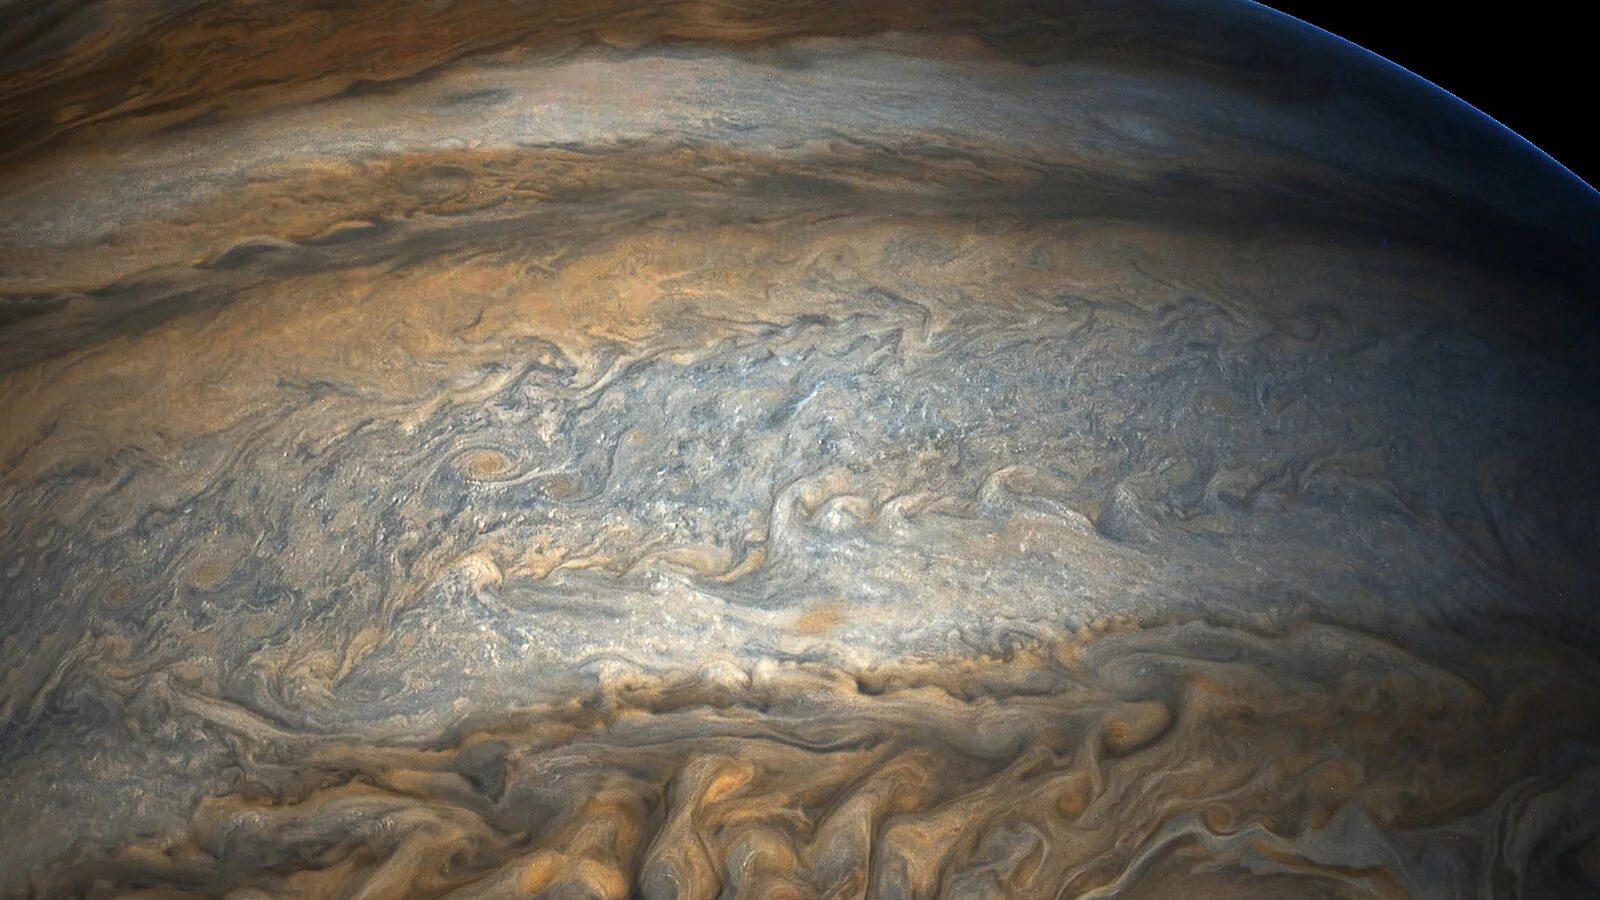 Самый большой океан в солнечной системе. Термосфера Юпитера. Юпитер Планета газовый гигант. Снимки поверхности Юпитера. Термосфера Юпитера Юпитера.